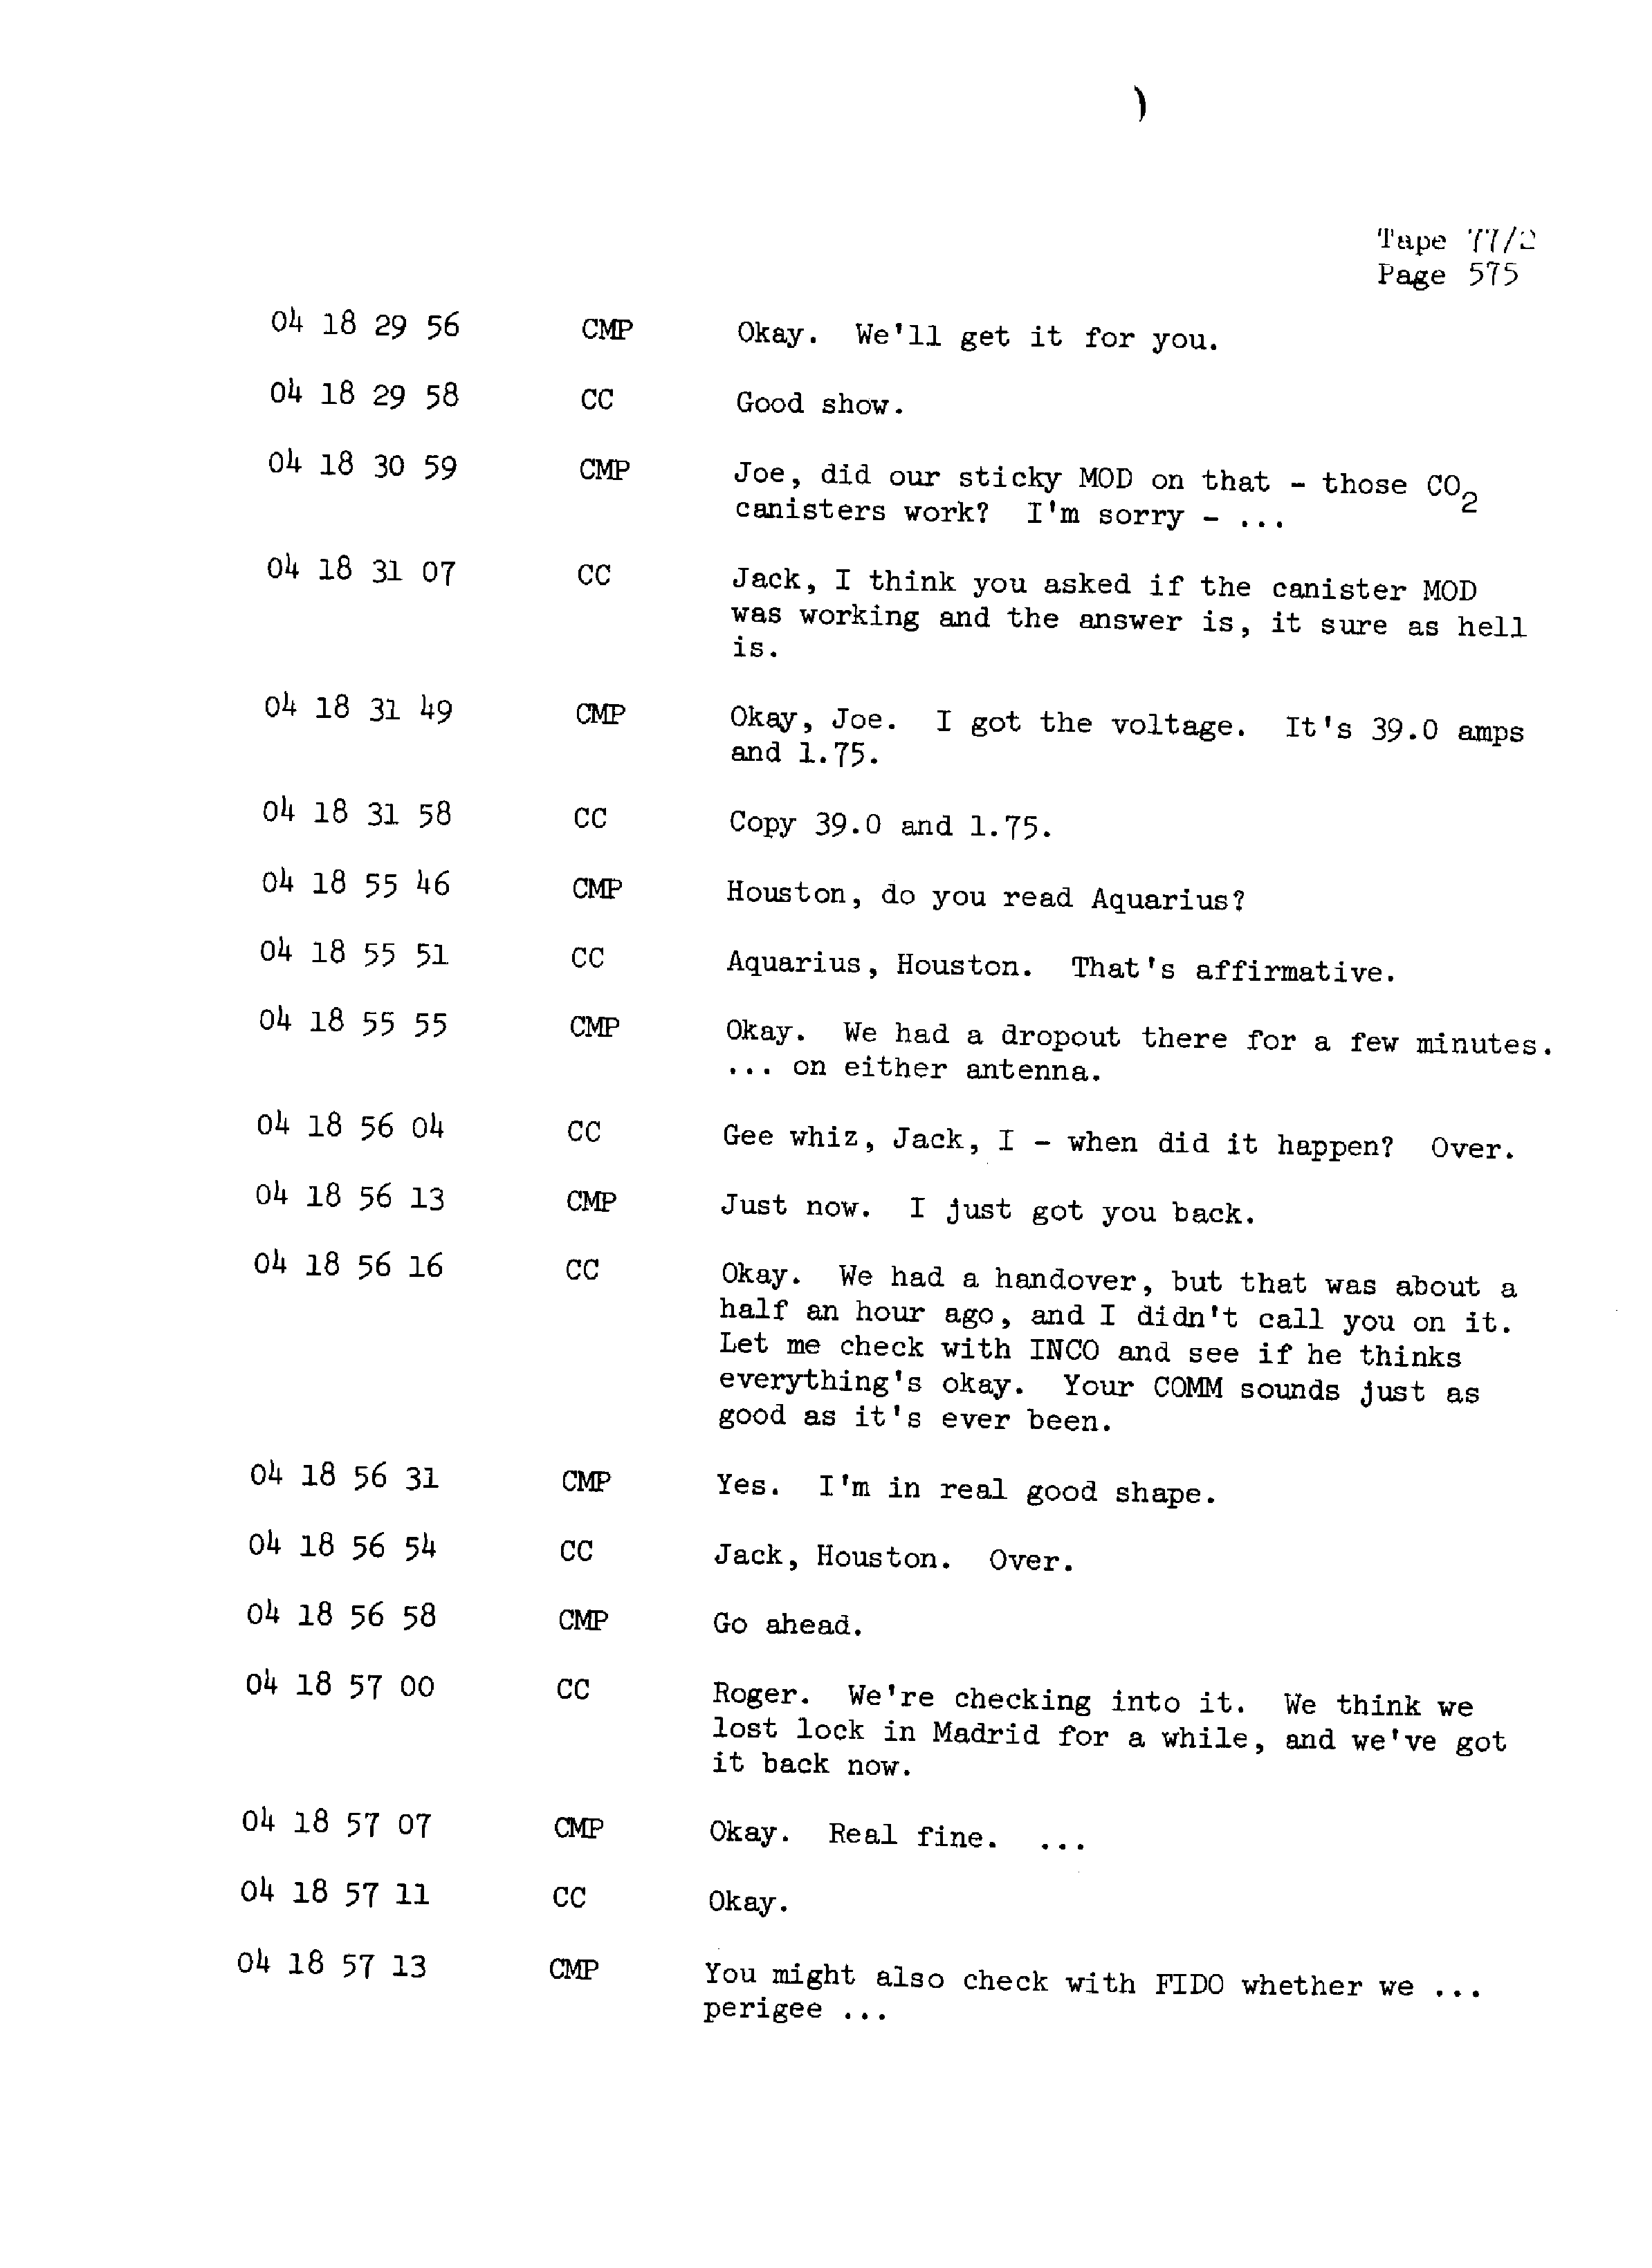 Page 582 of Apollo 13’s original transcript